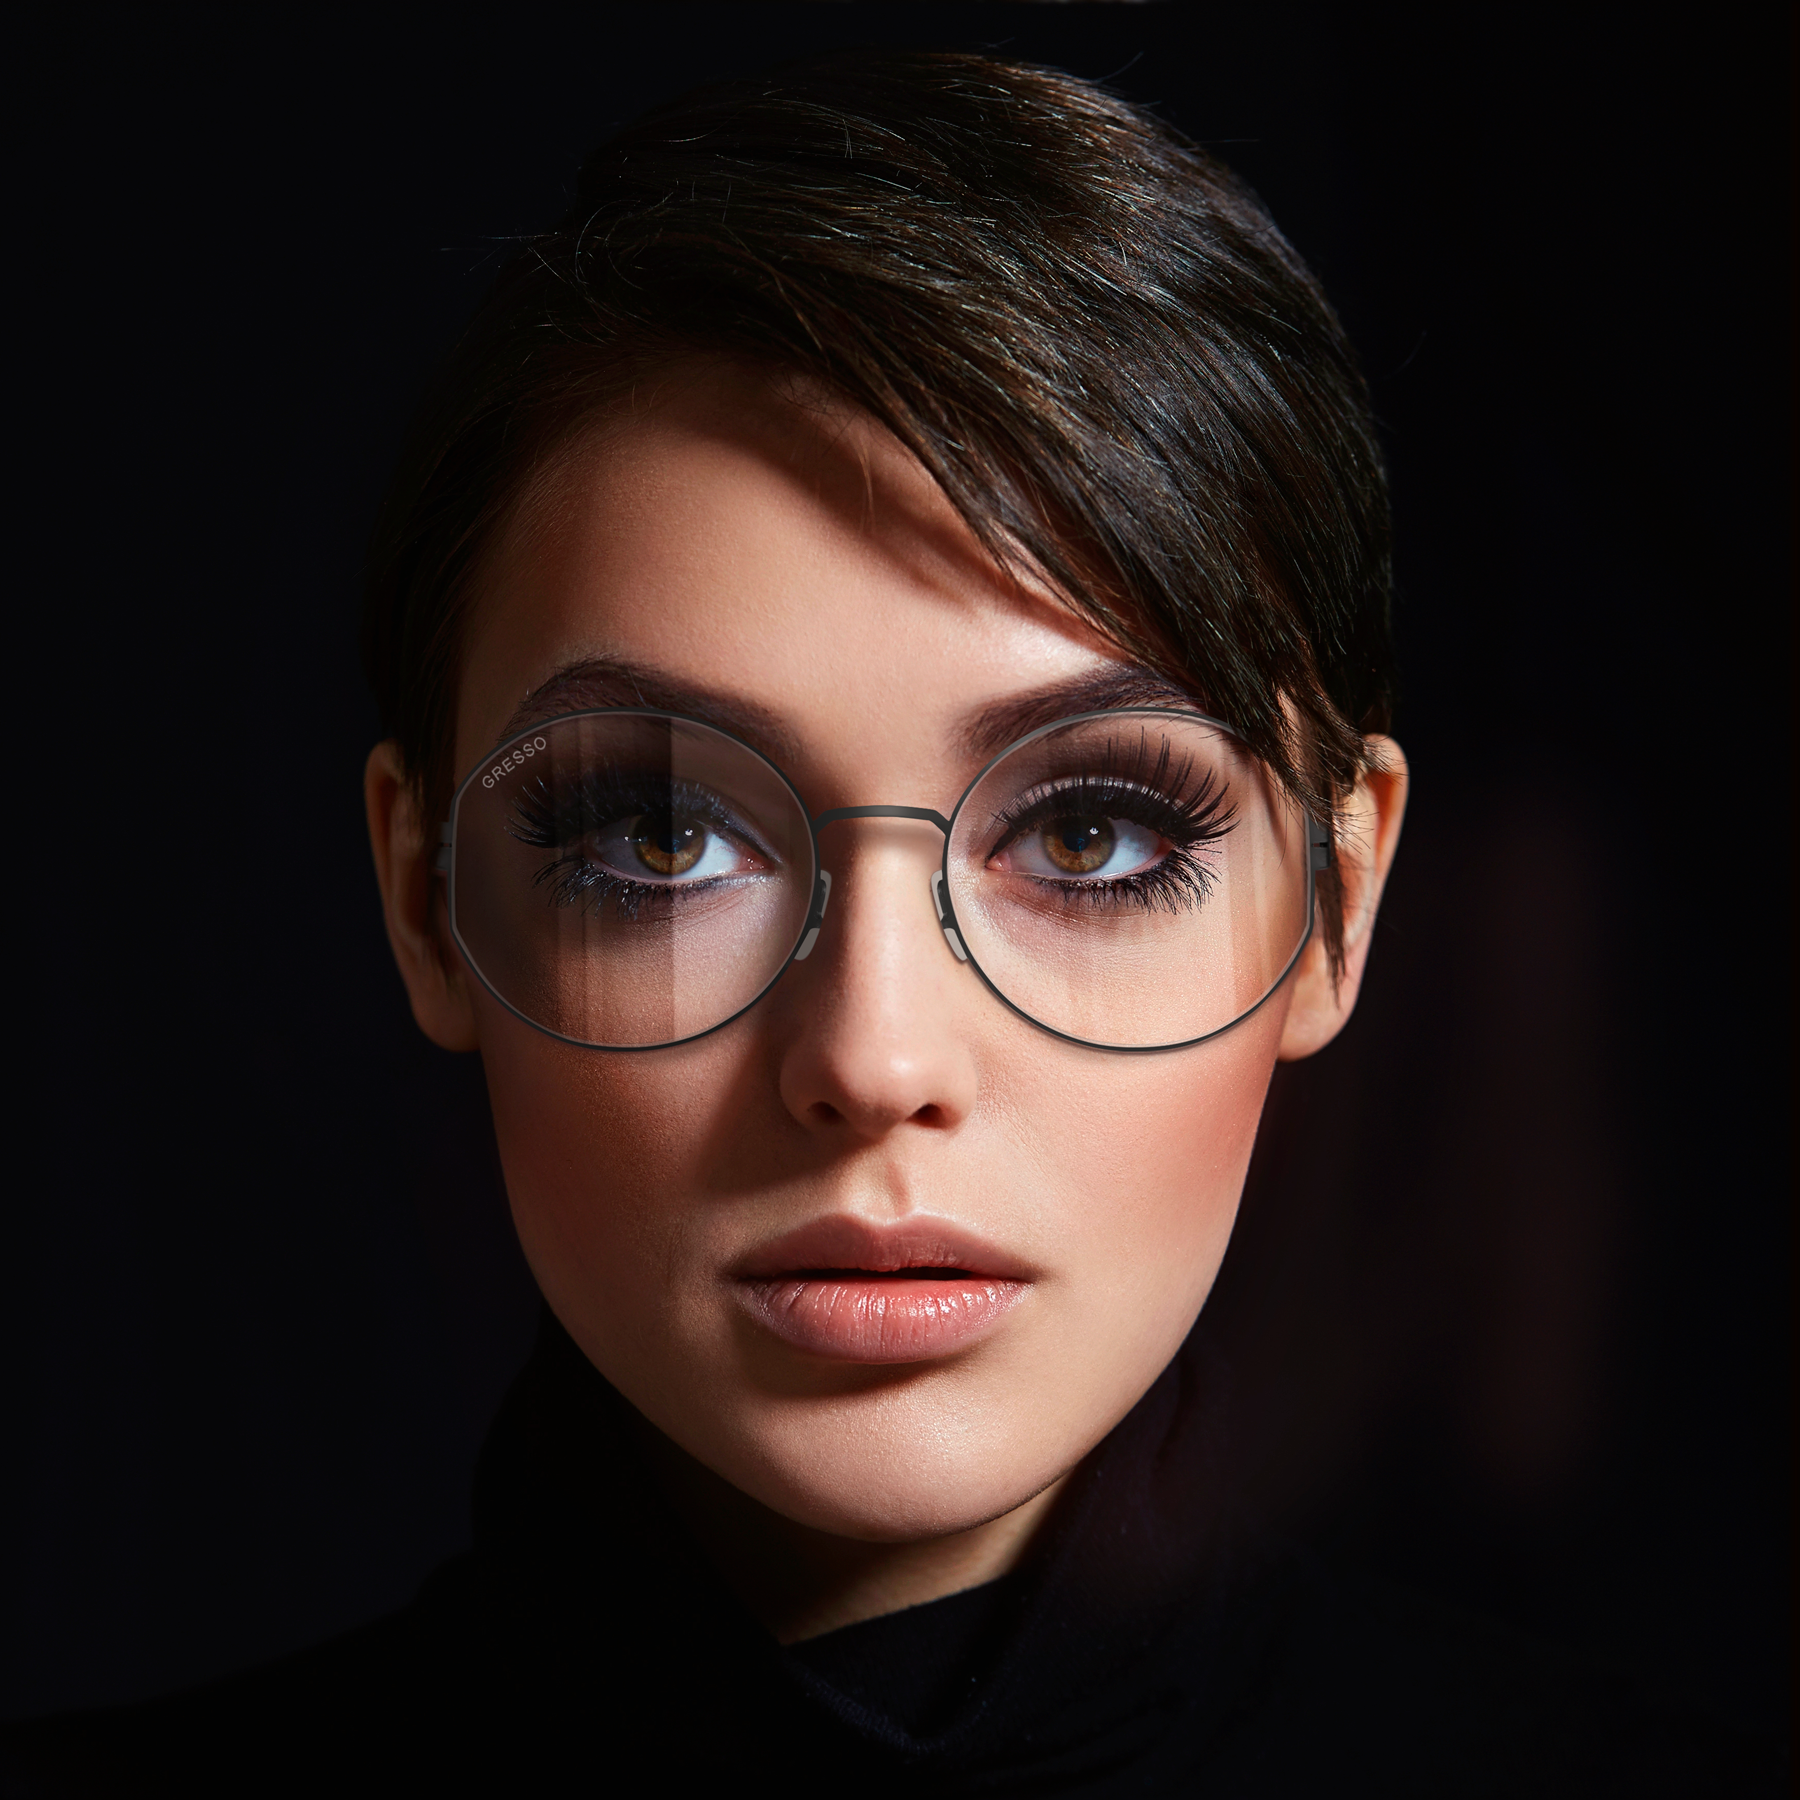 Купить онлайн или в салонах оптики в Москве и Санкт-Петербурге мужские титановые очки для зрения GRESSO Monica с диоптриями, изготовленные по вашему рецепту. Воспользуйтесь услугой бесплатной проверки зрения и консультацией опытного врача-офтальмолога.